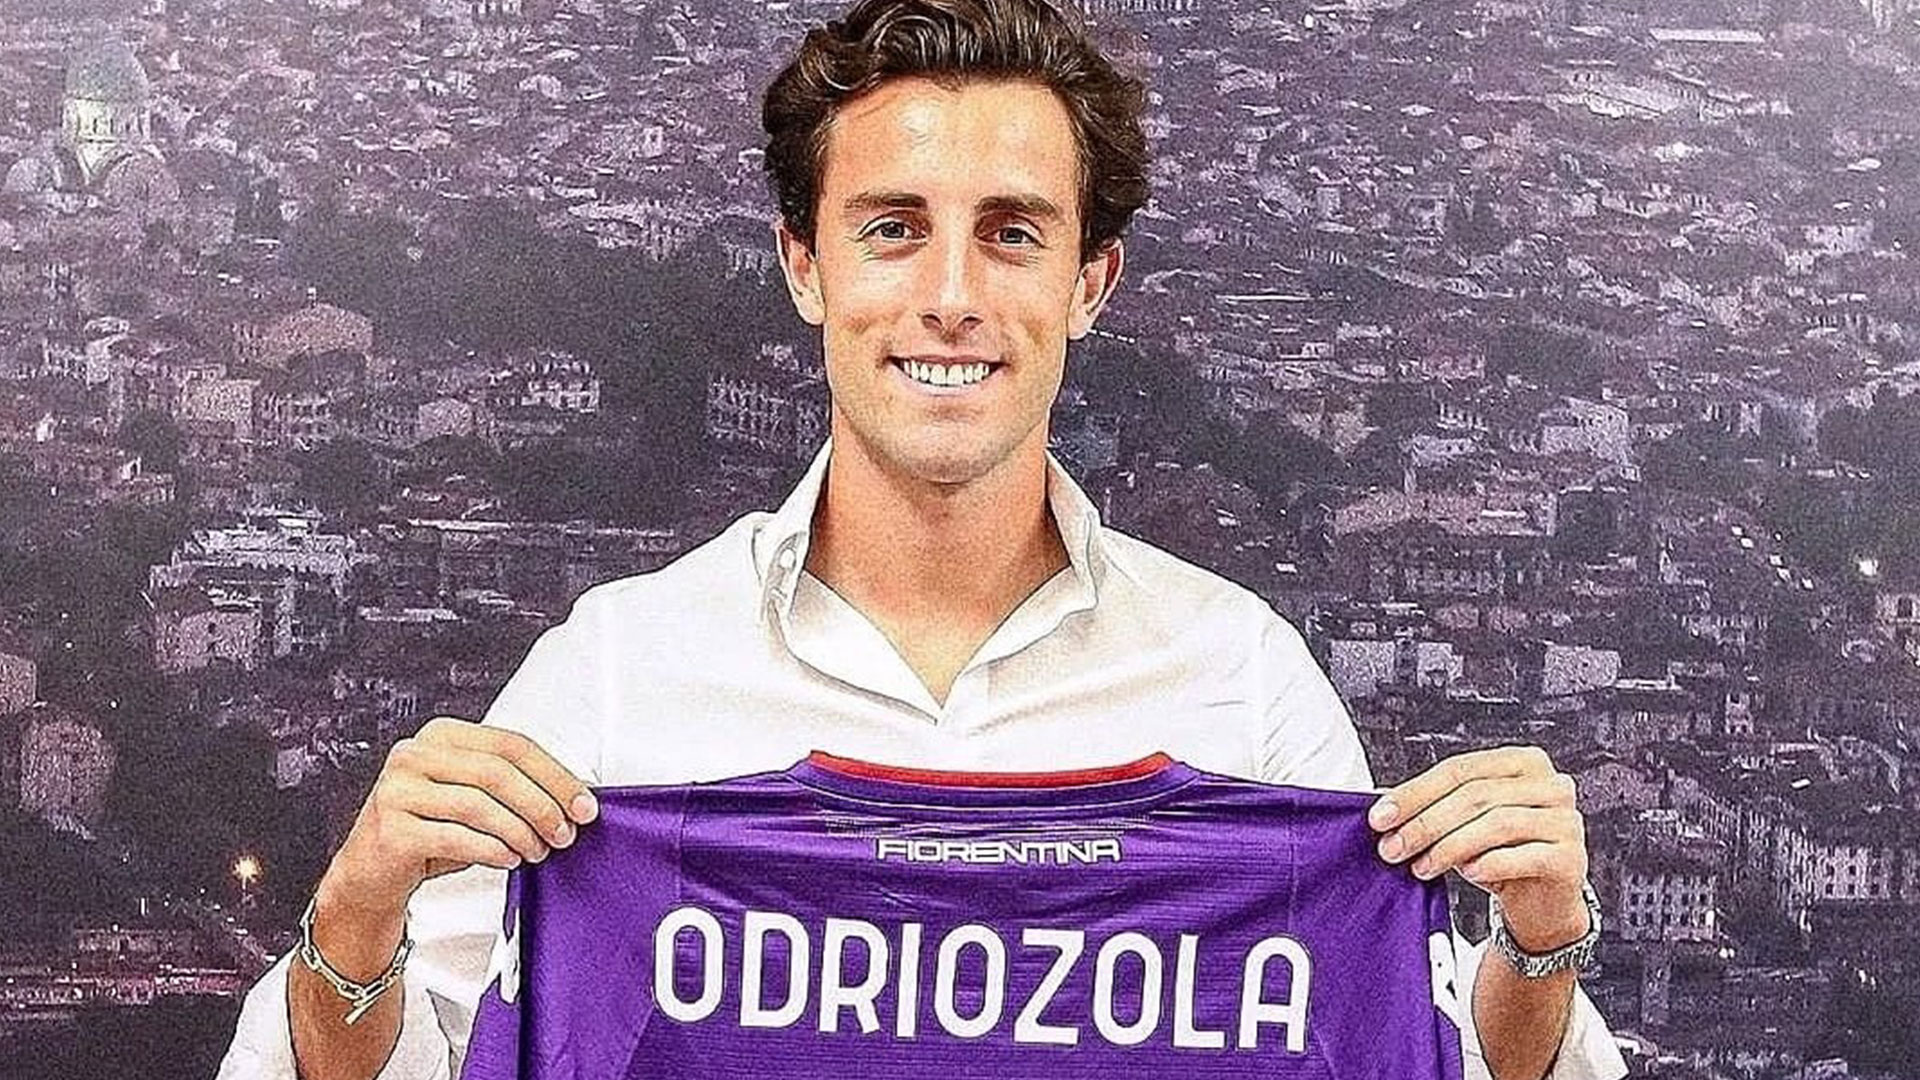 El lateral español Álvaro Odriozola durante el momento de su presentación como jugador de la Fiorentina. (Foto Prensa Libre: Álvaro Odriozola Twitter)